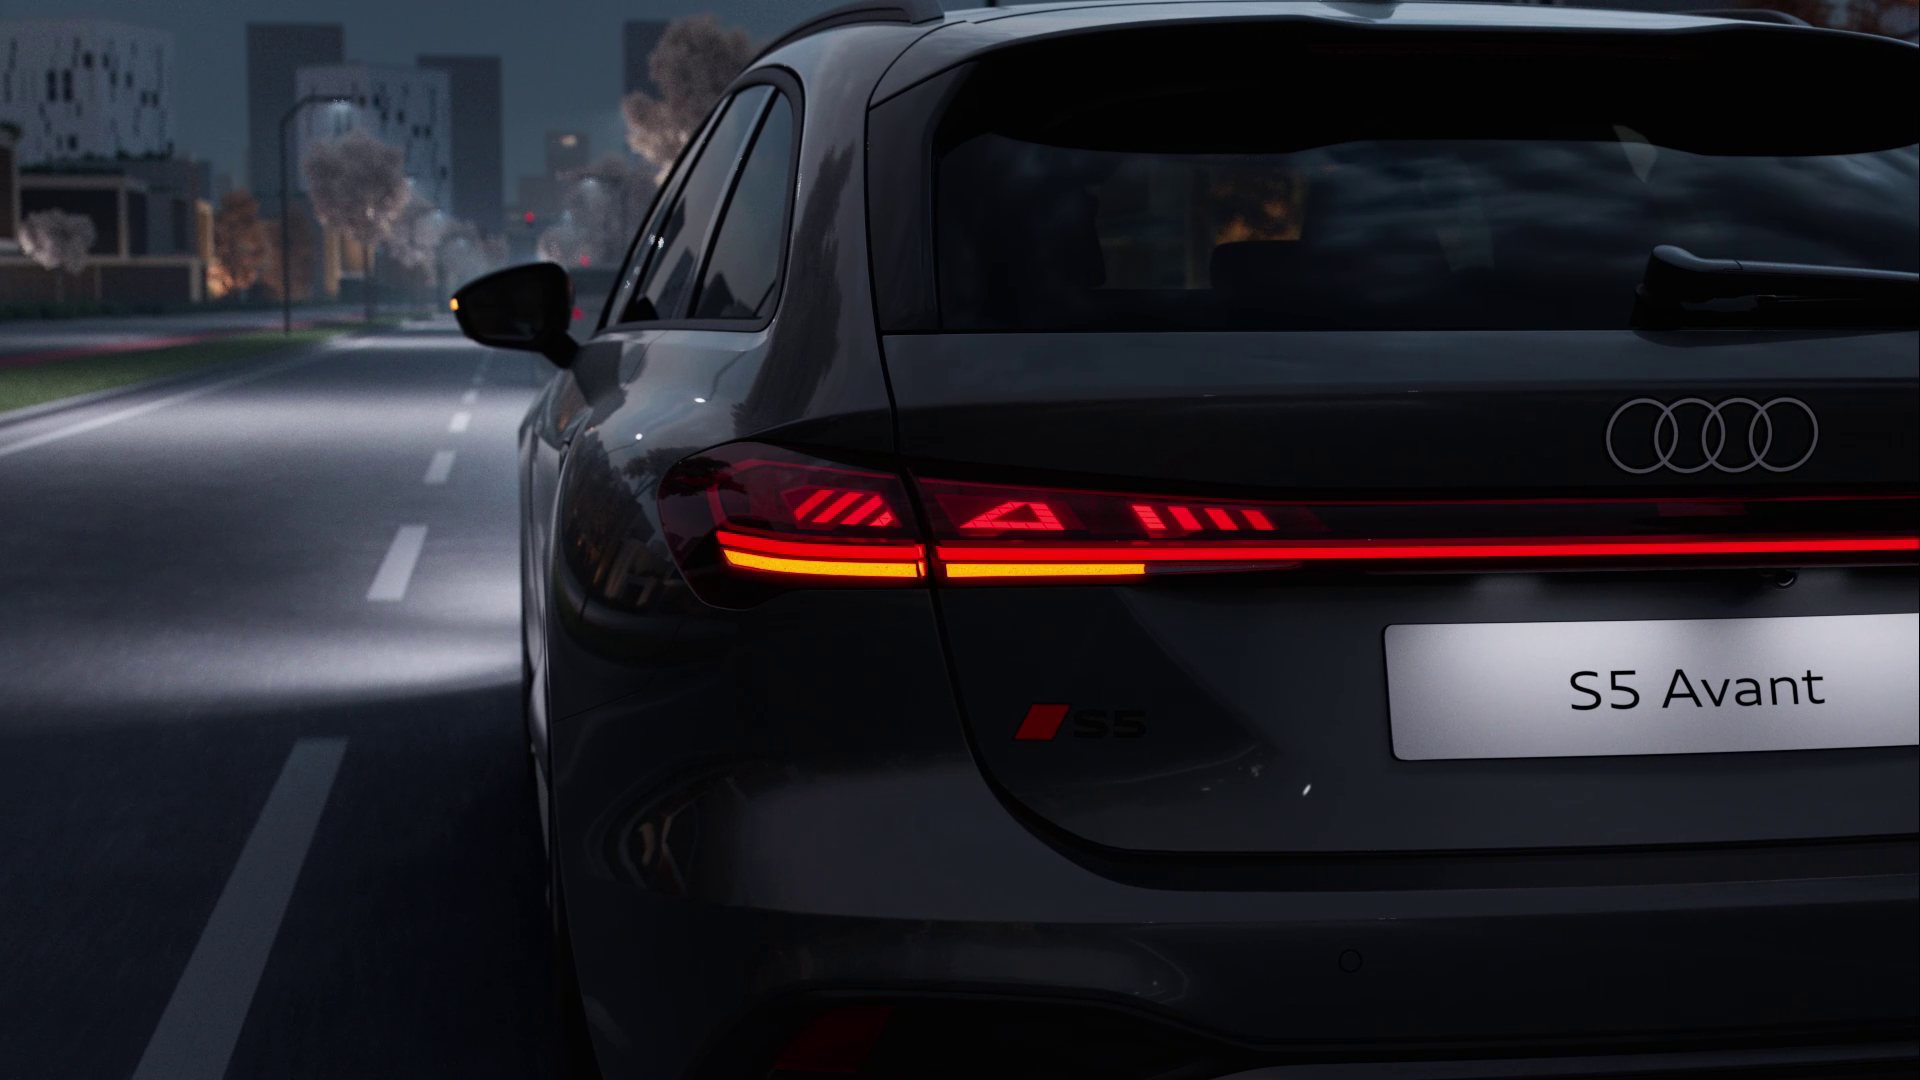 Audi S5 Avant - Digital OLED rear lights - Animation